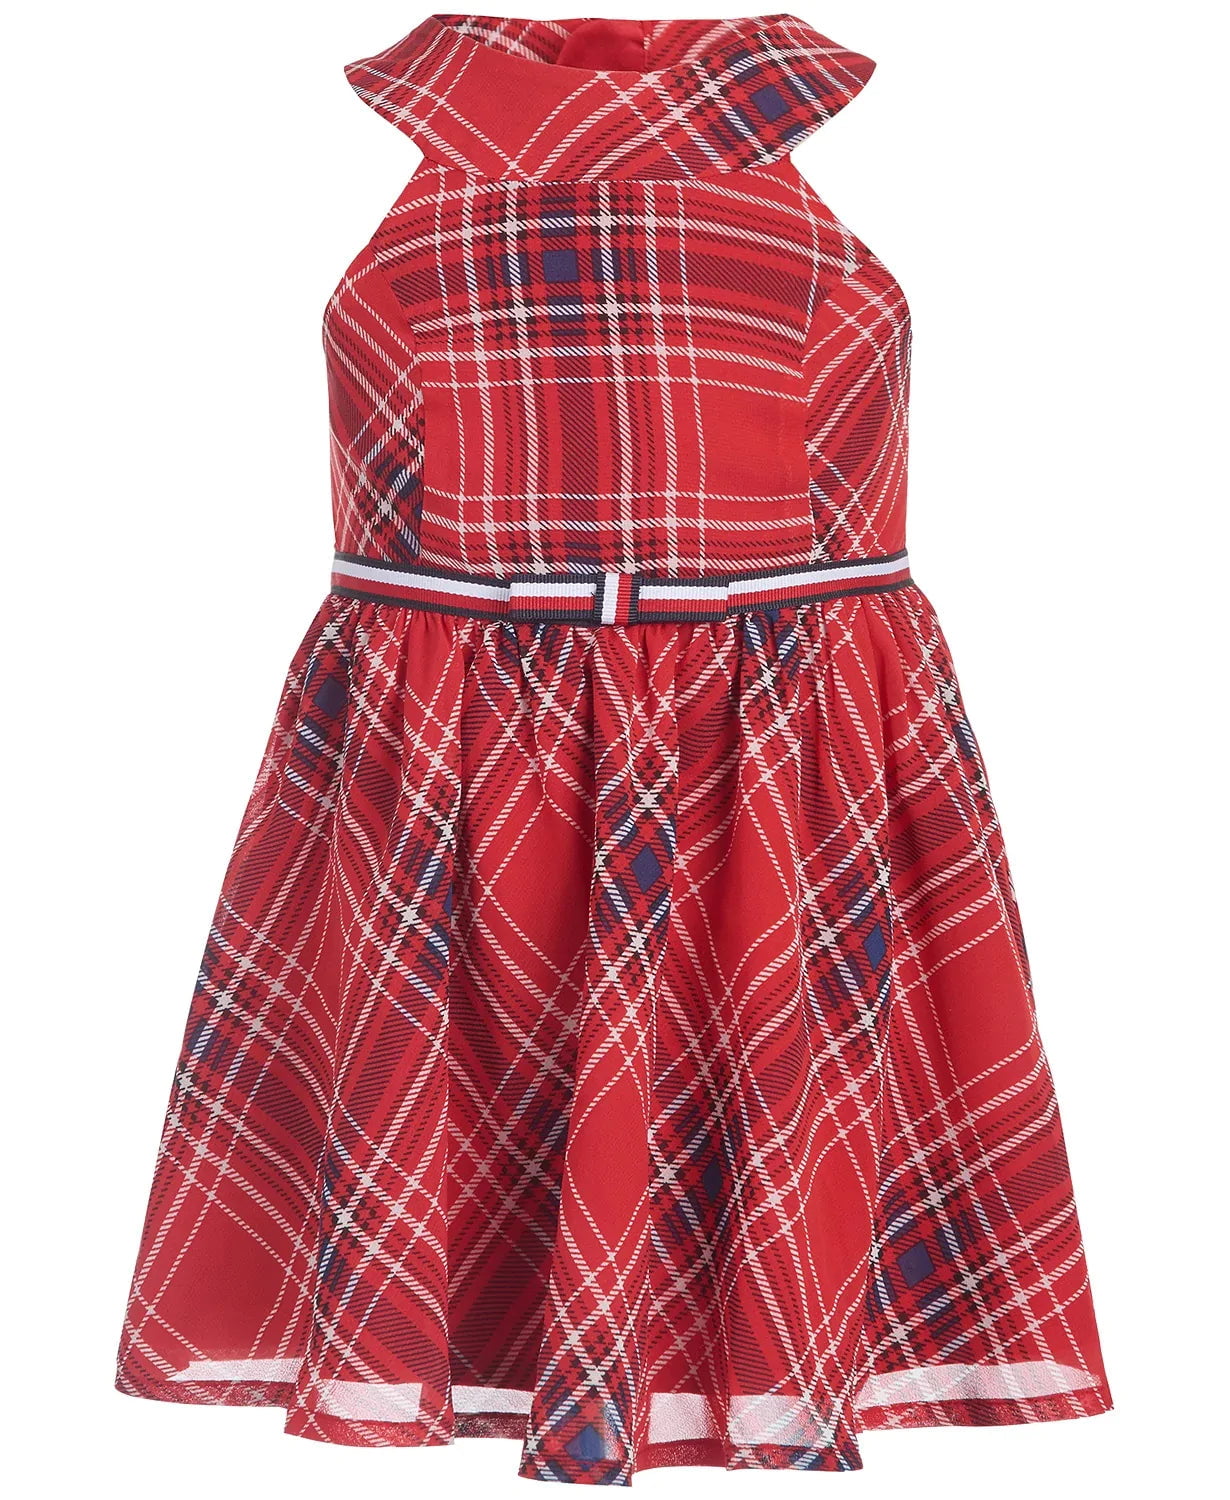 Tommy Hilfiger Plaid Dress Plaid Red Girls Dress, Size XL - Walmart.com